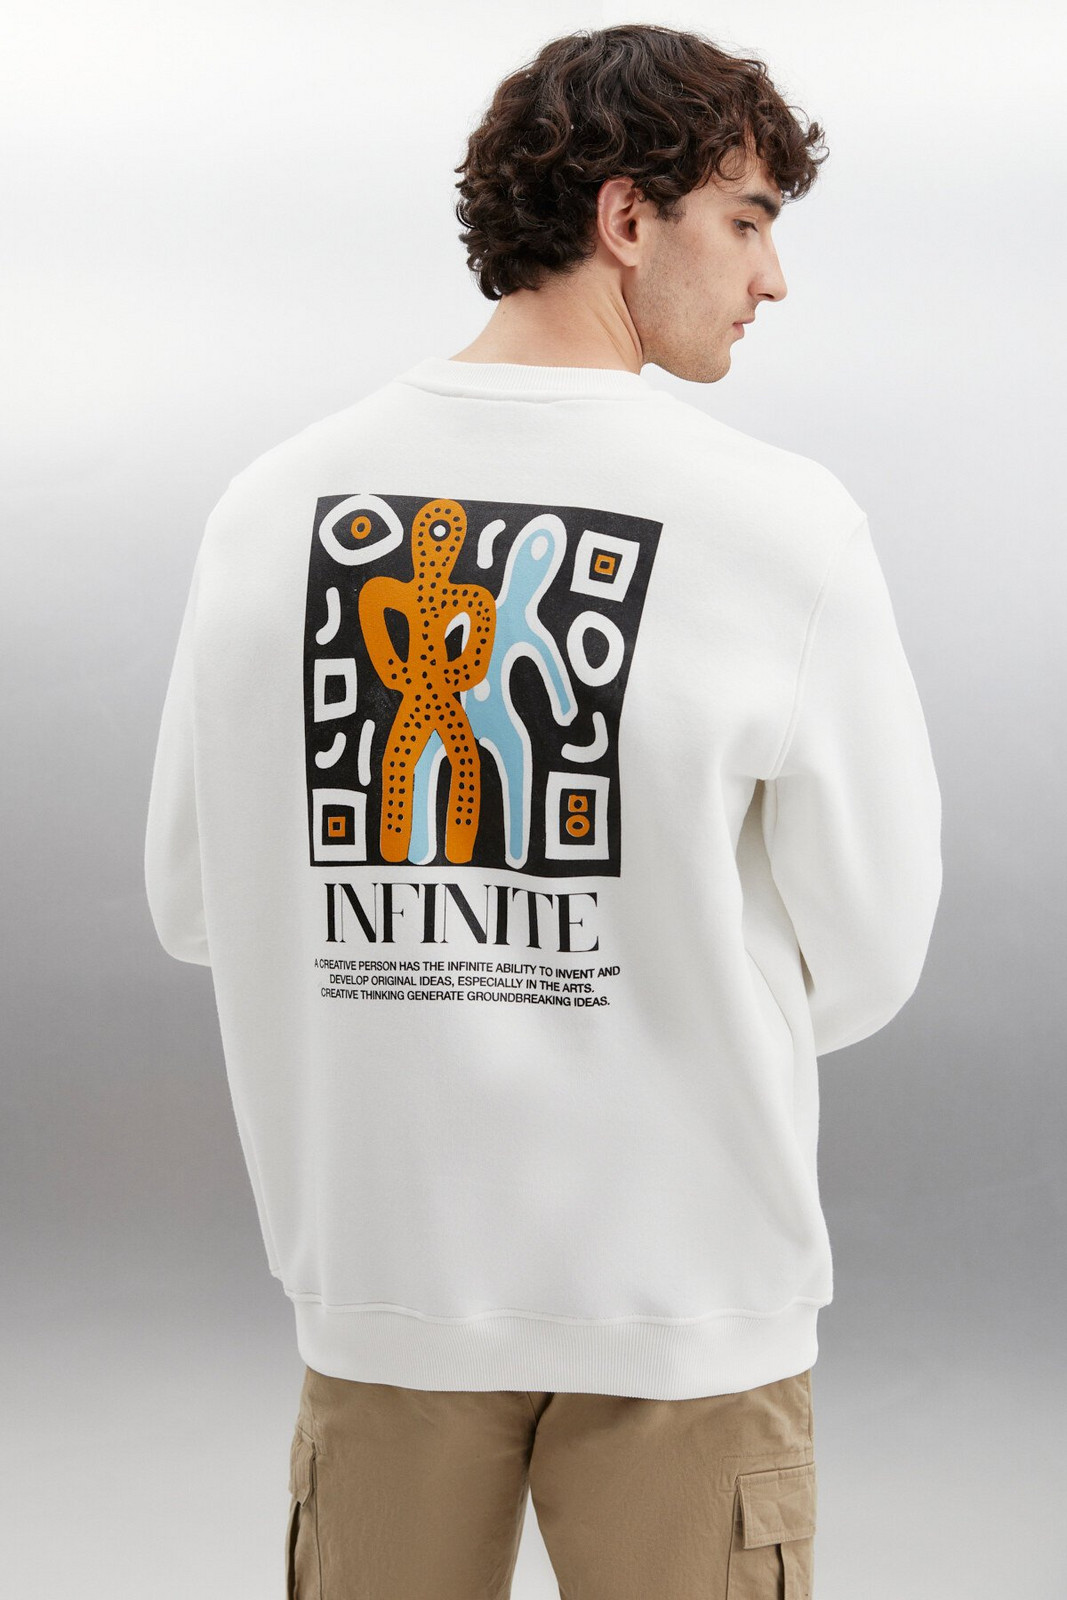 GRIMELANGE Falk Men's Round Neck Art Printed Ecru Sweatshirt with Fleece Inside